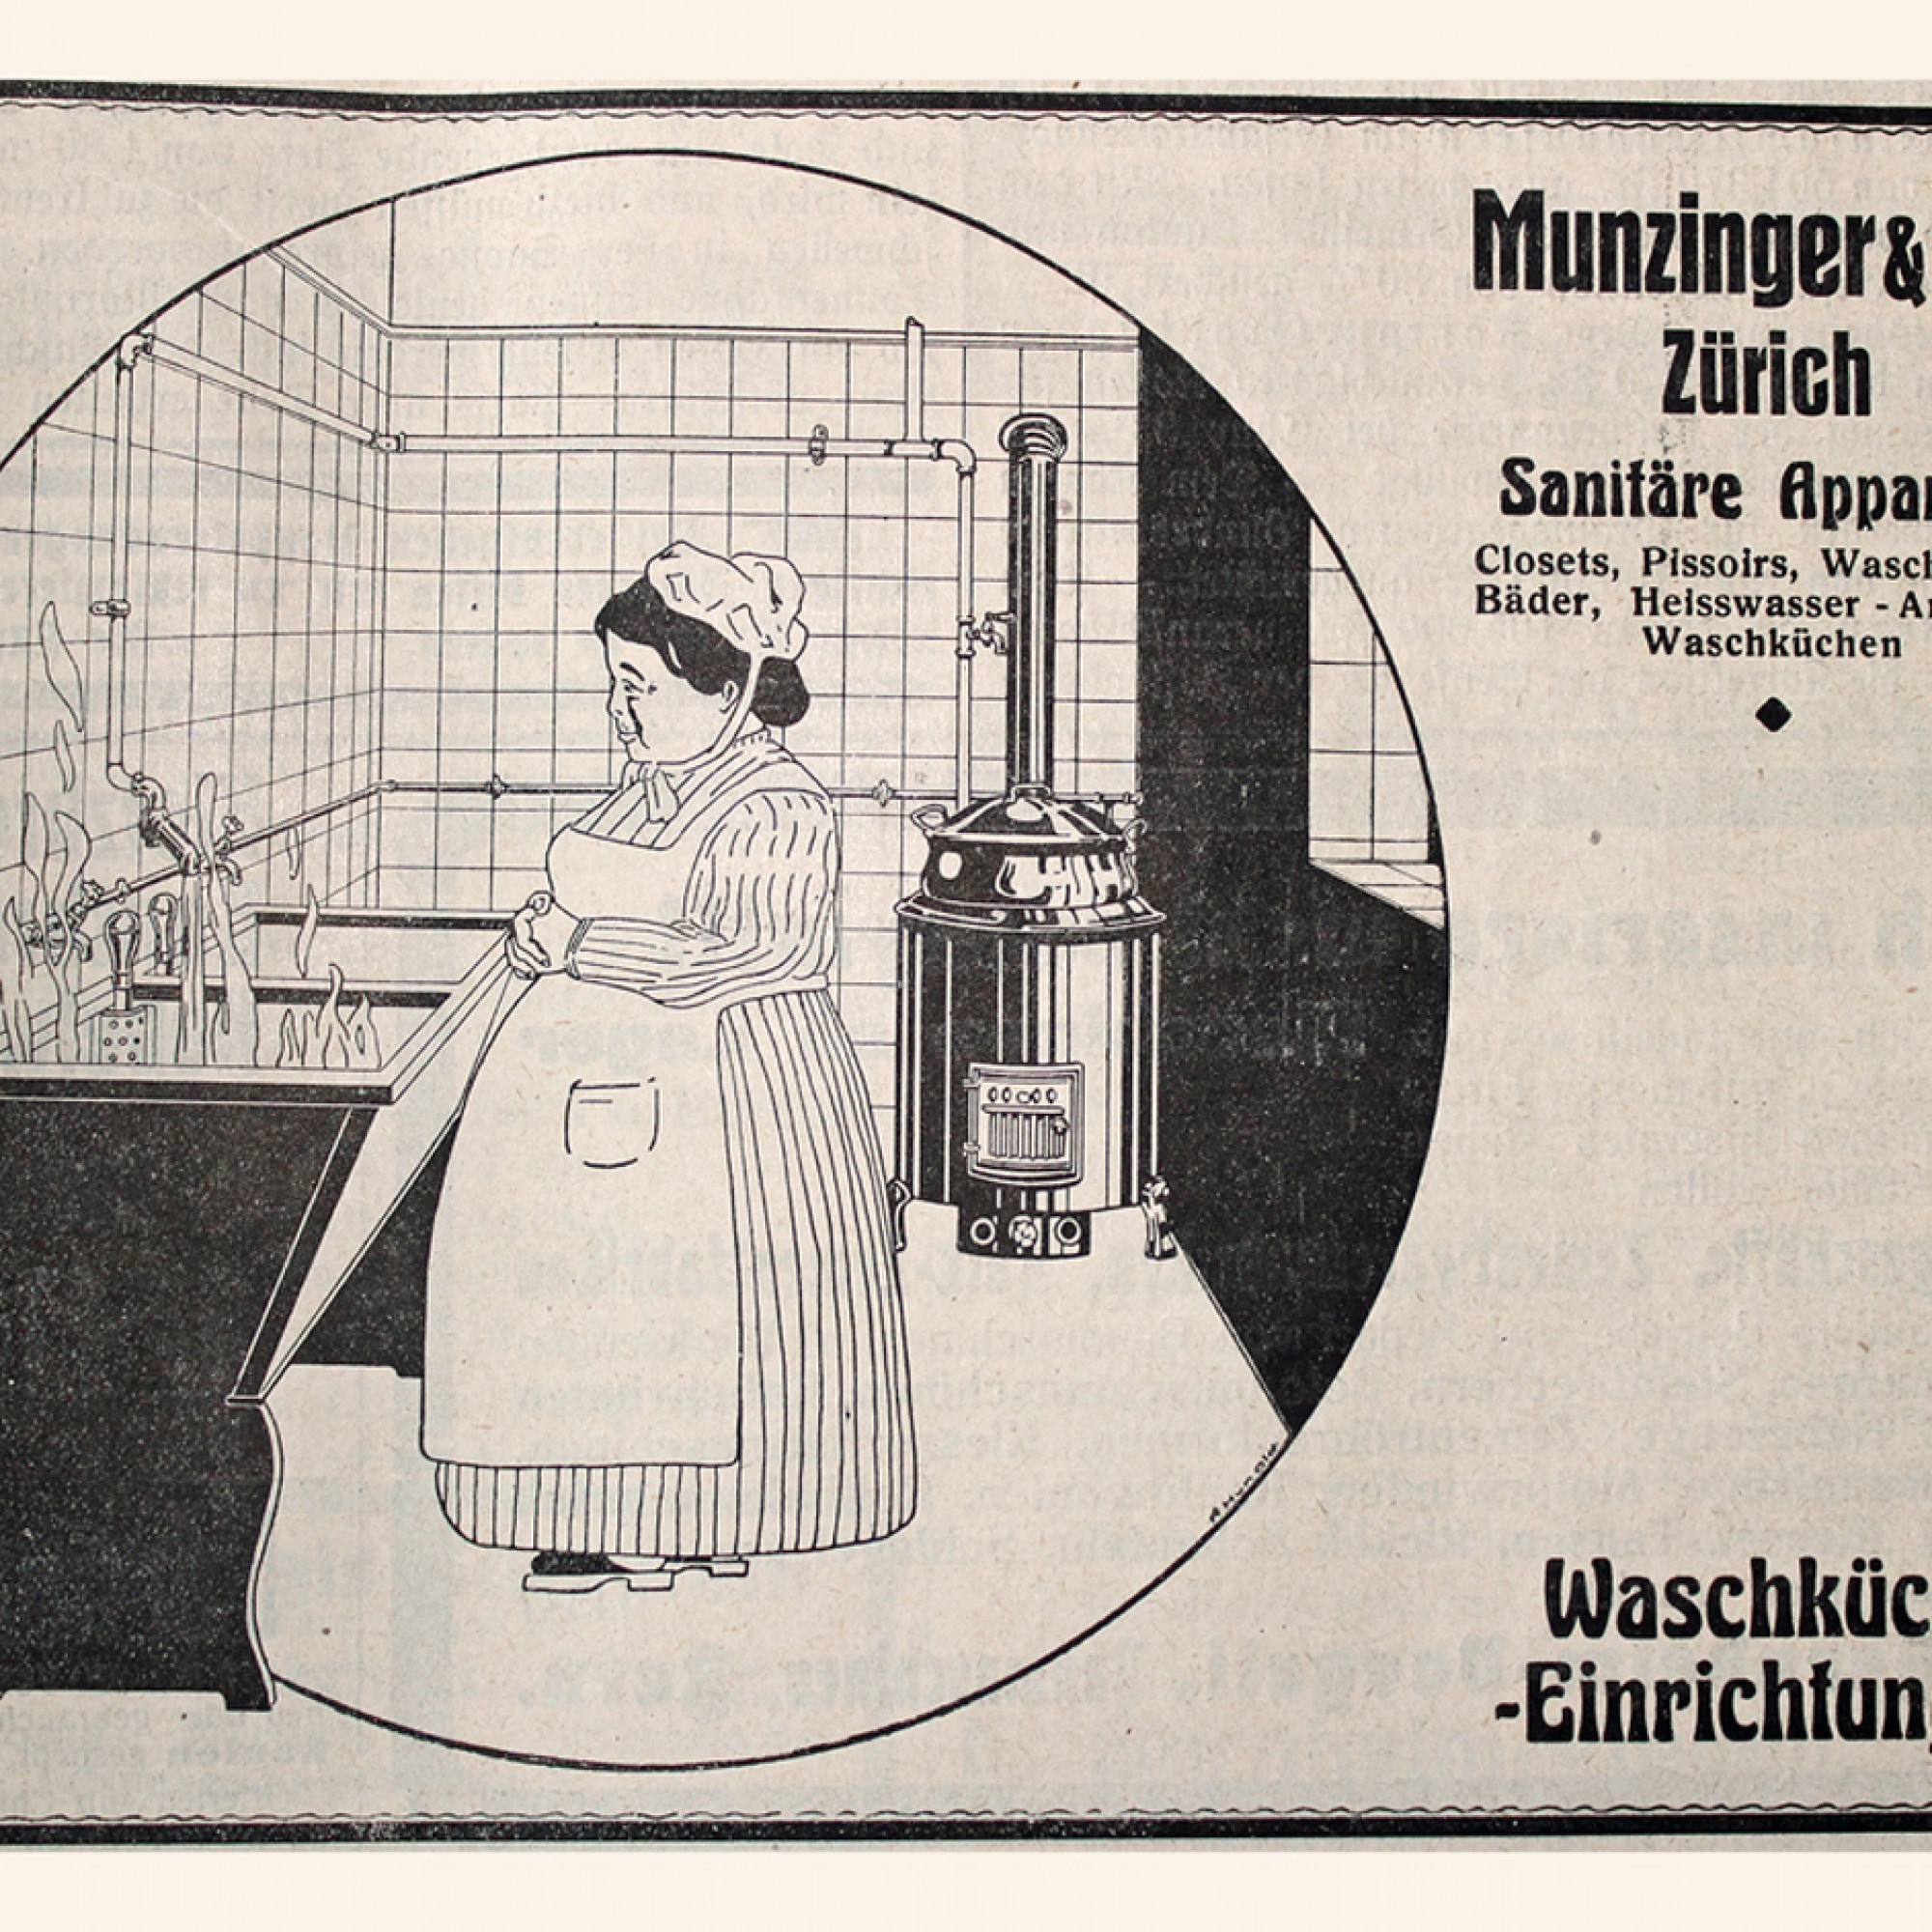 Ein weiteres Exemplar von Munzinger & Co. AG. Wieso es da im Lavabo zu brennen scheint, verstehen wir auch nicht ganz. 